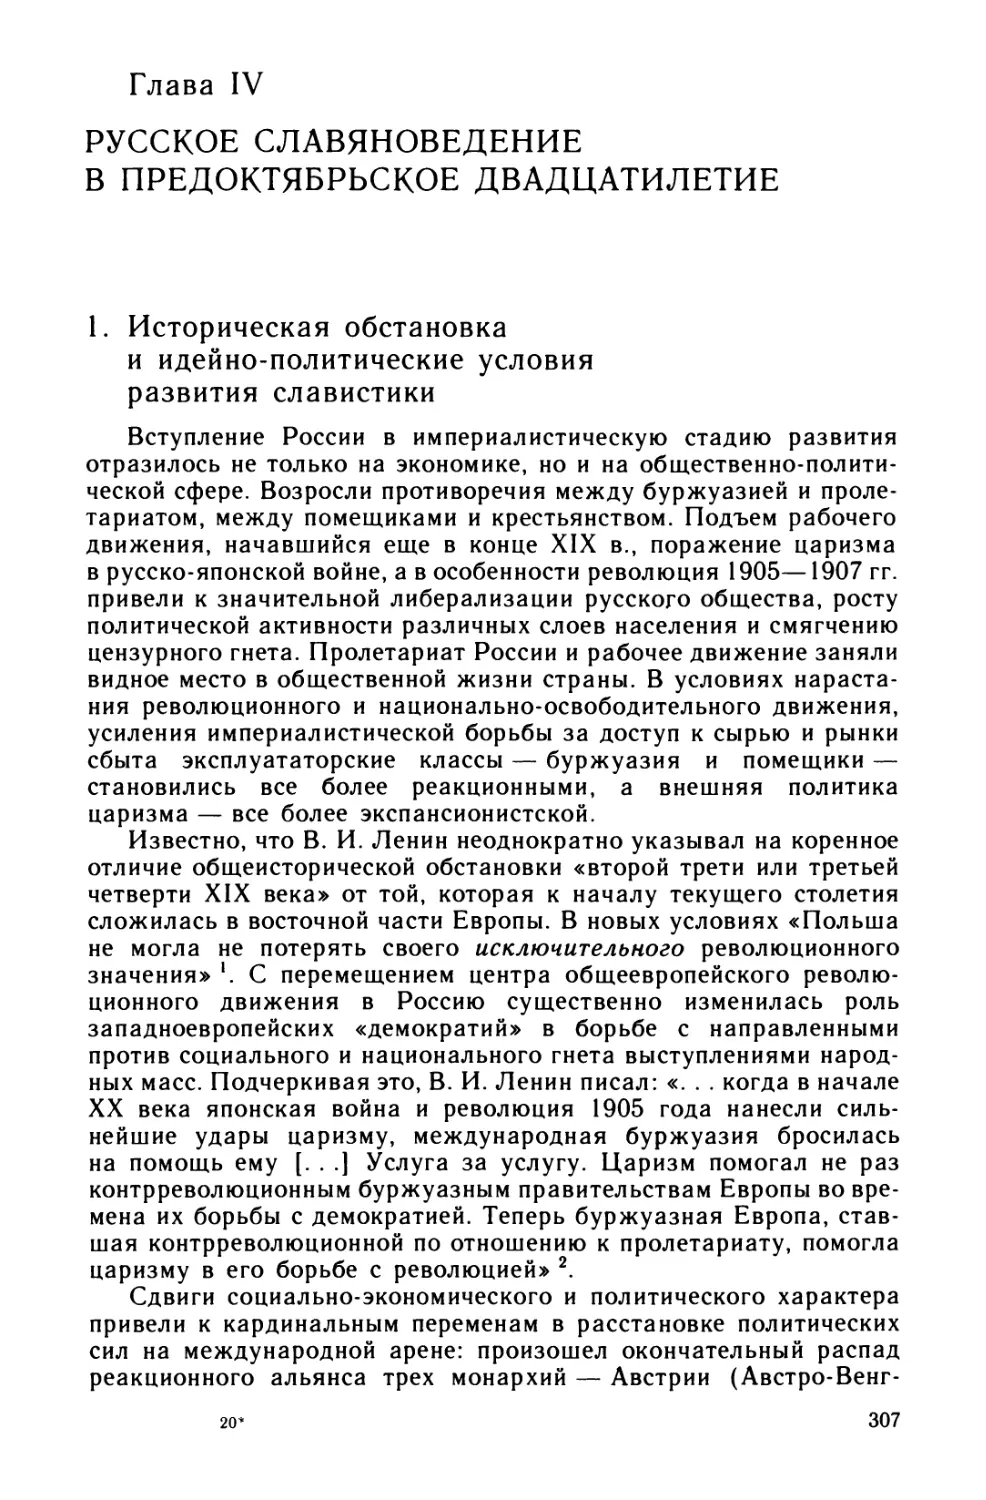 Глава IV. Русское славяноведение в предоктябрьское двадцатилетие